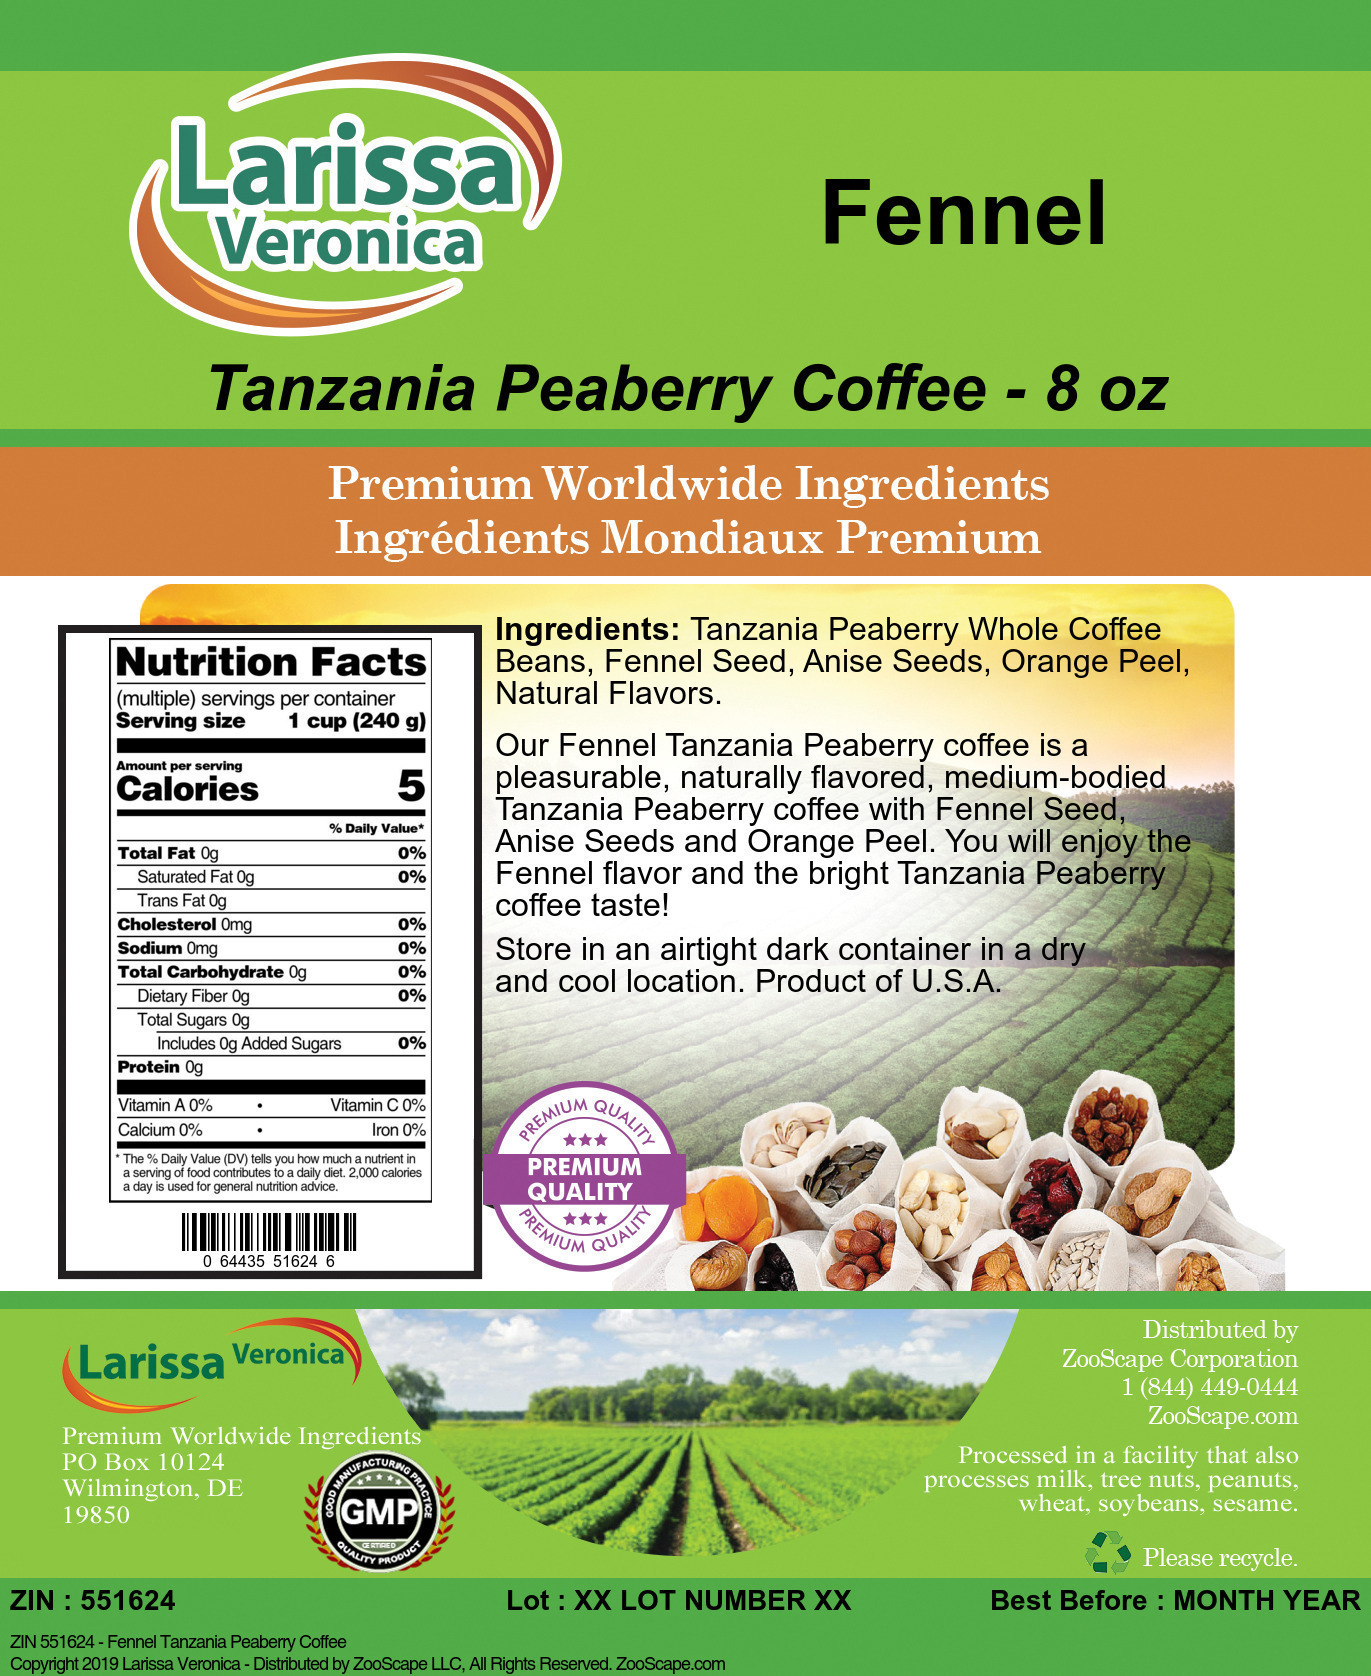 Fennel Tanzania Peaberry Coffee - Label